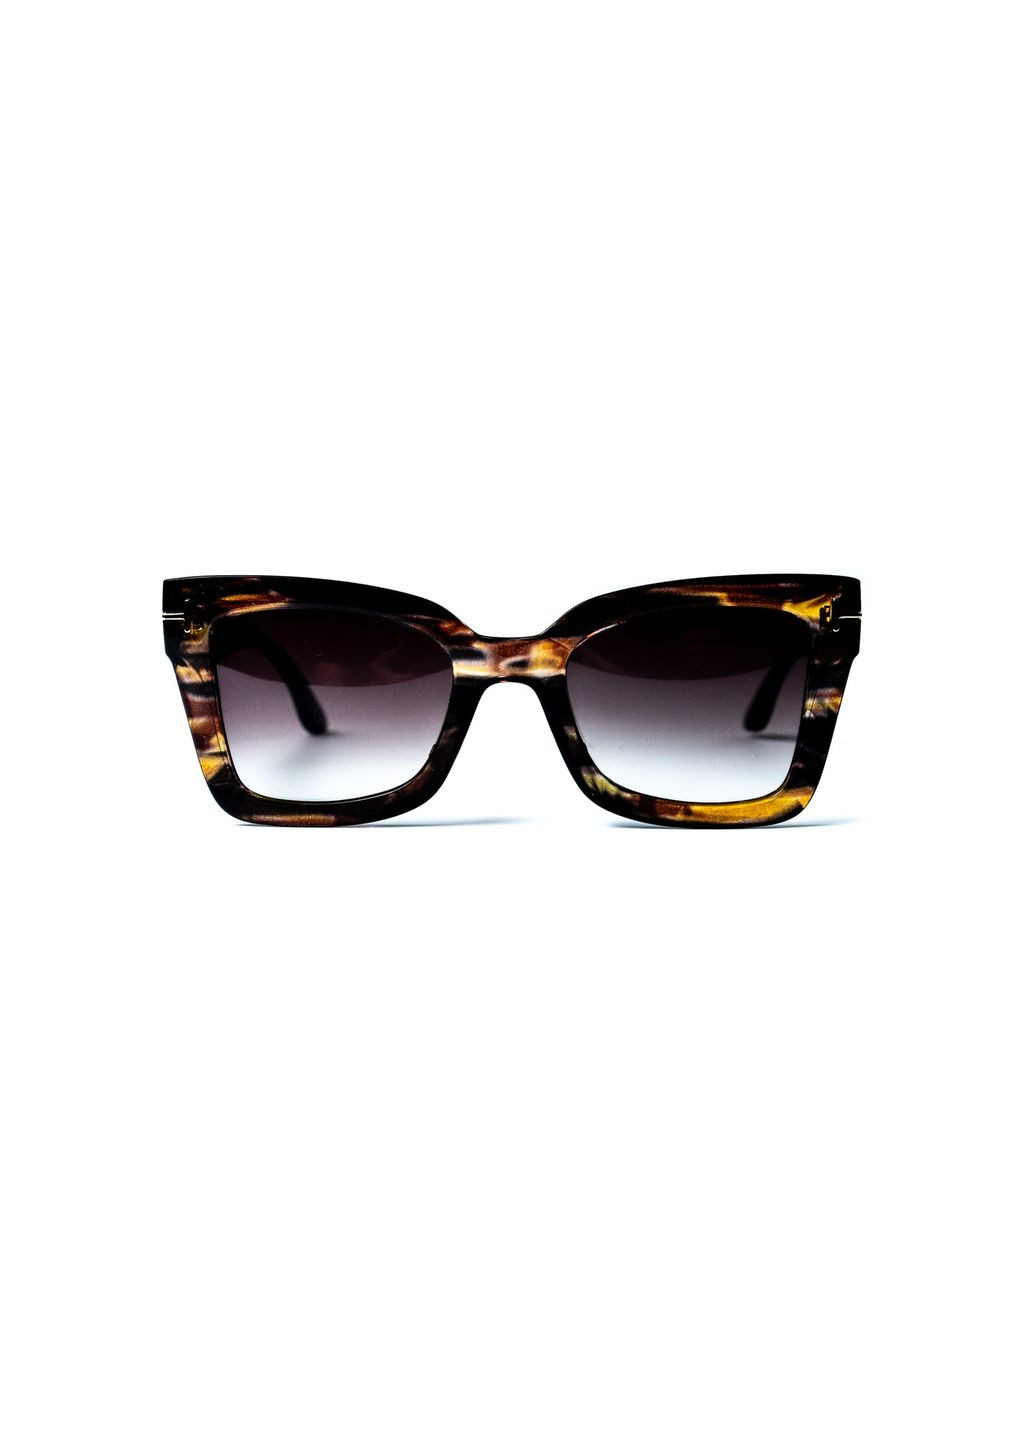 Солнцезащитные очки с поляризацией Фэшн-классика женские LuckyLOOK 428-898 (291161736)